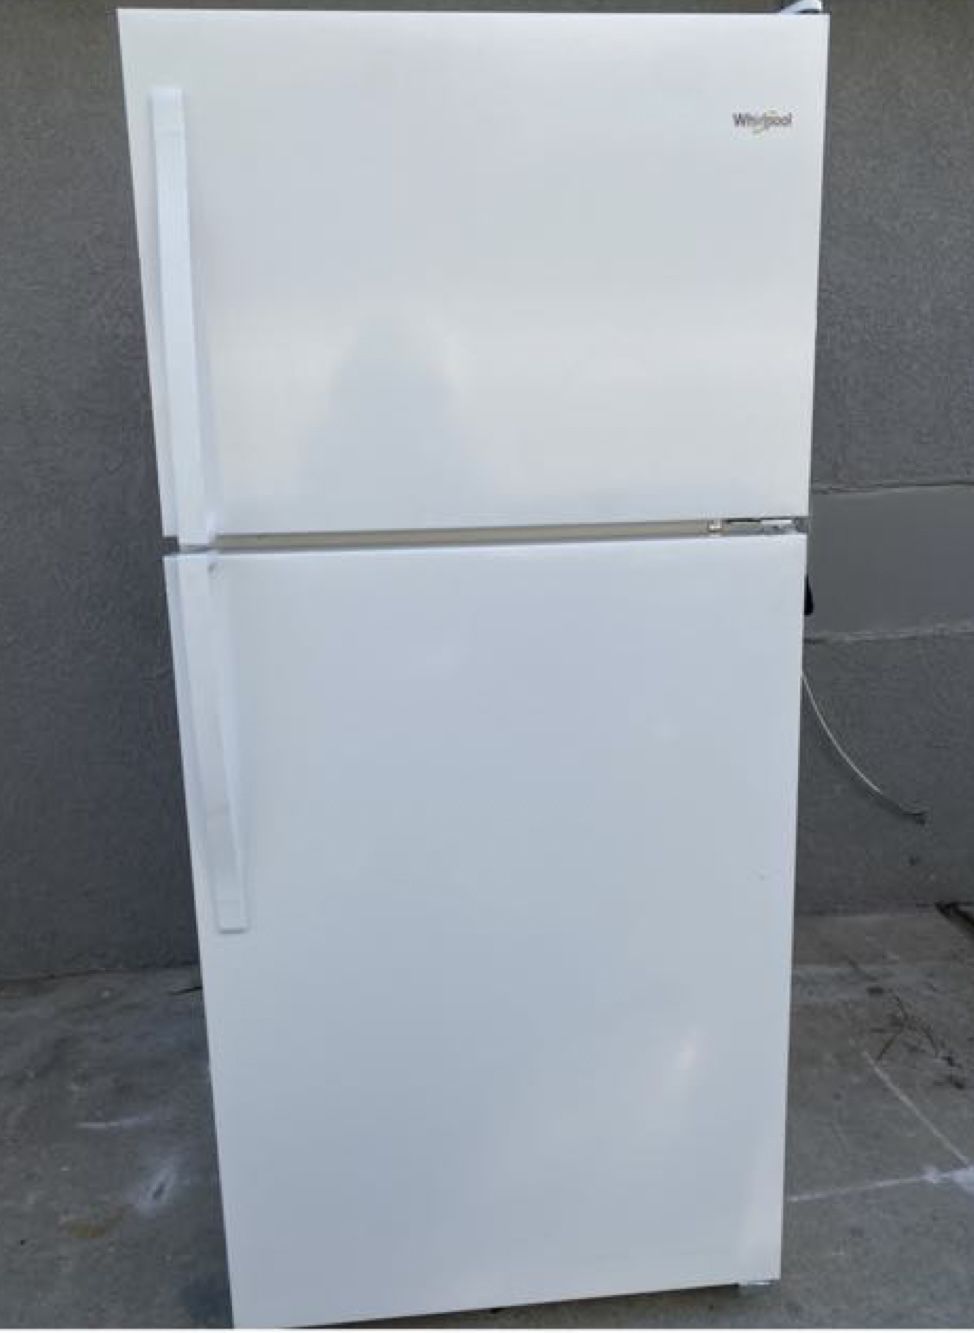 Whirpool Beautiful White Refrigerator 